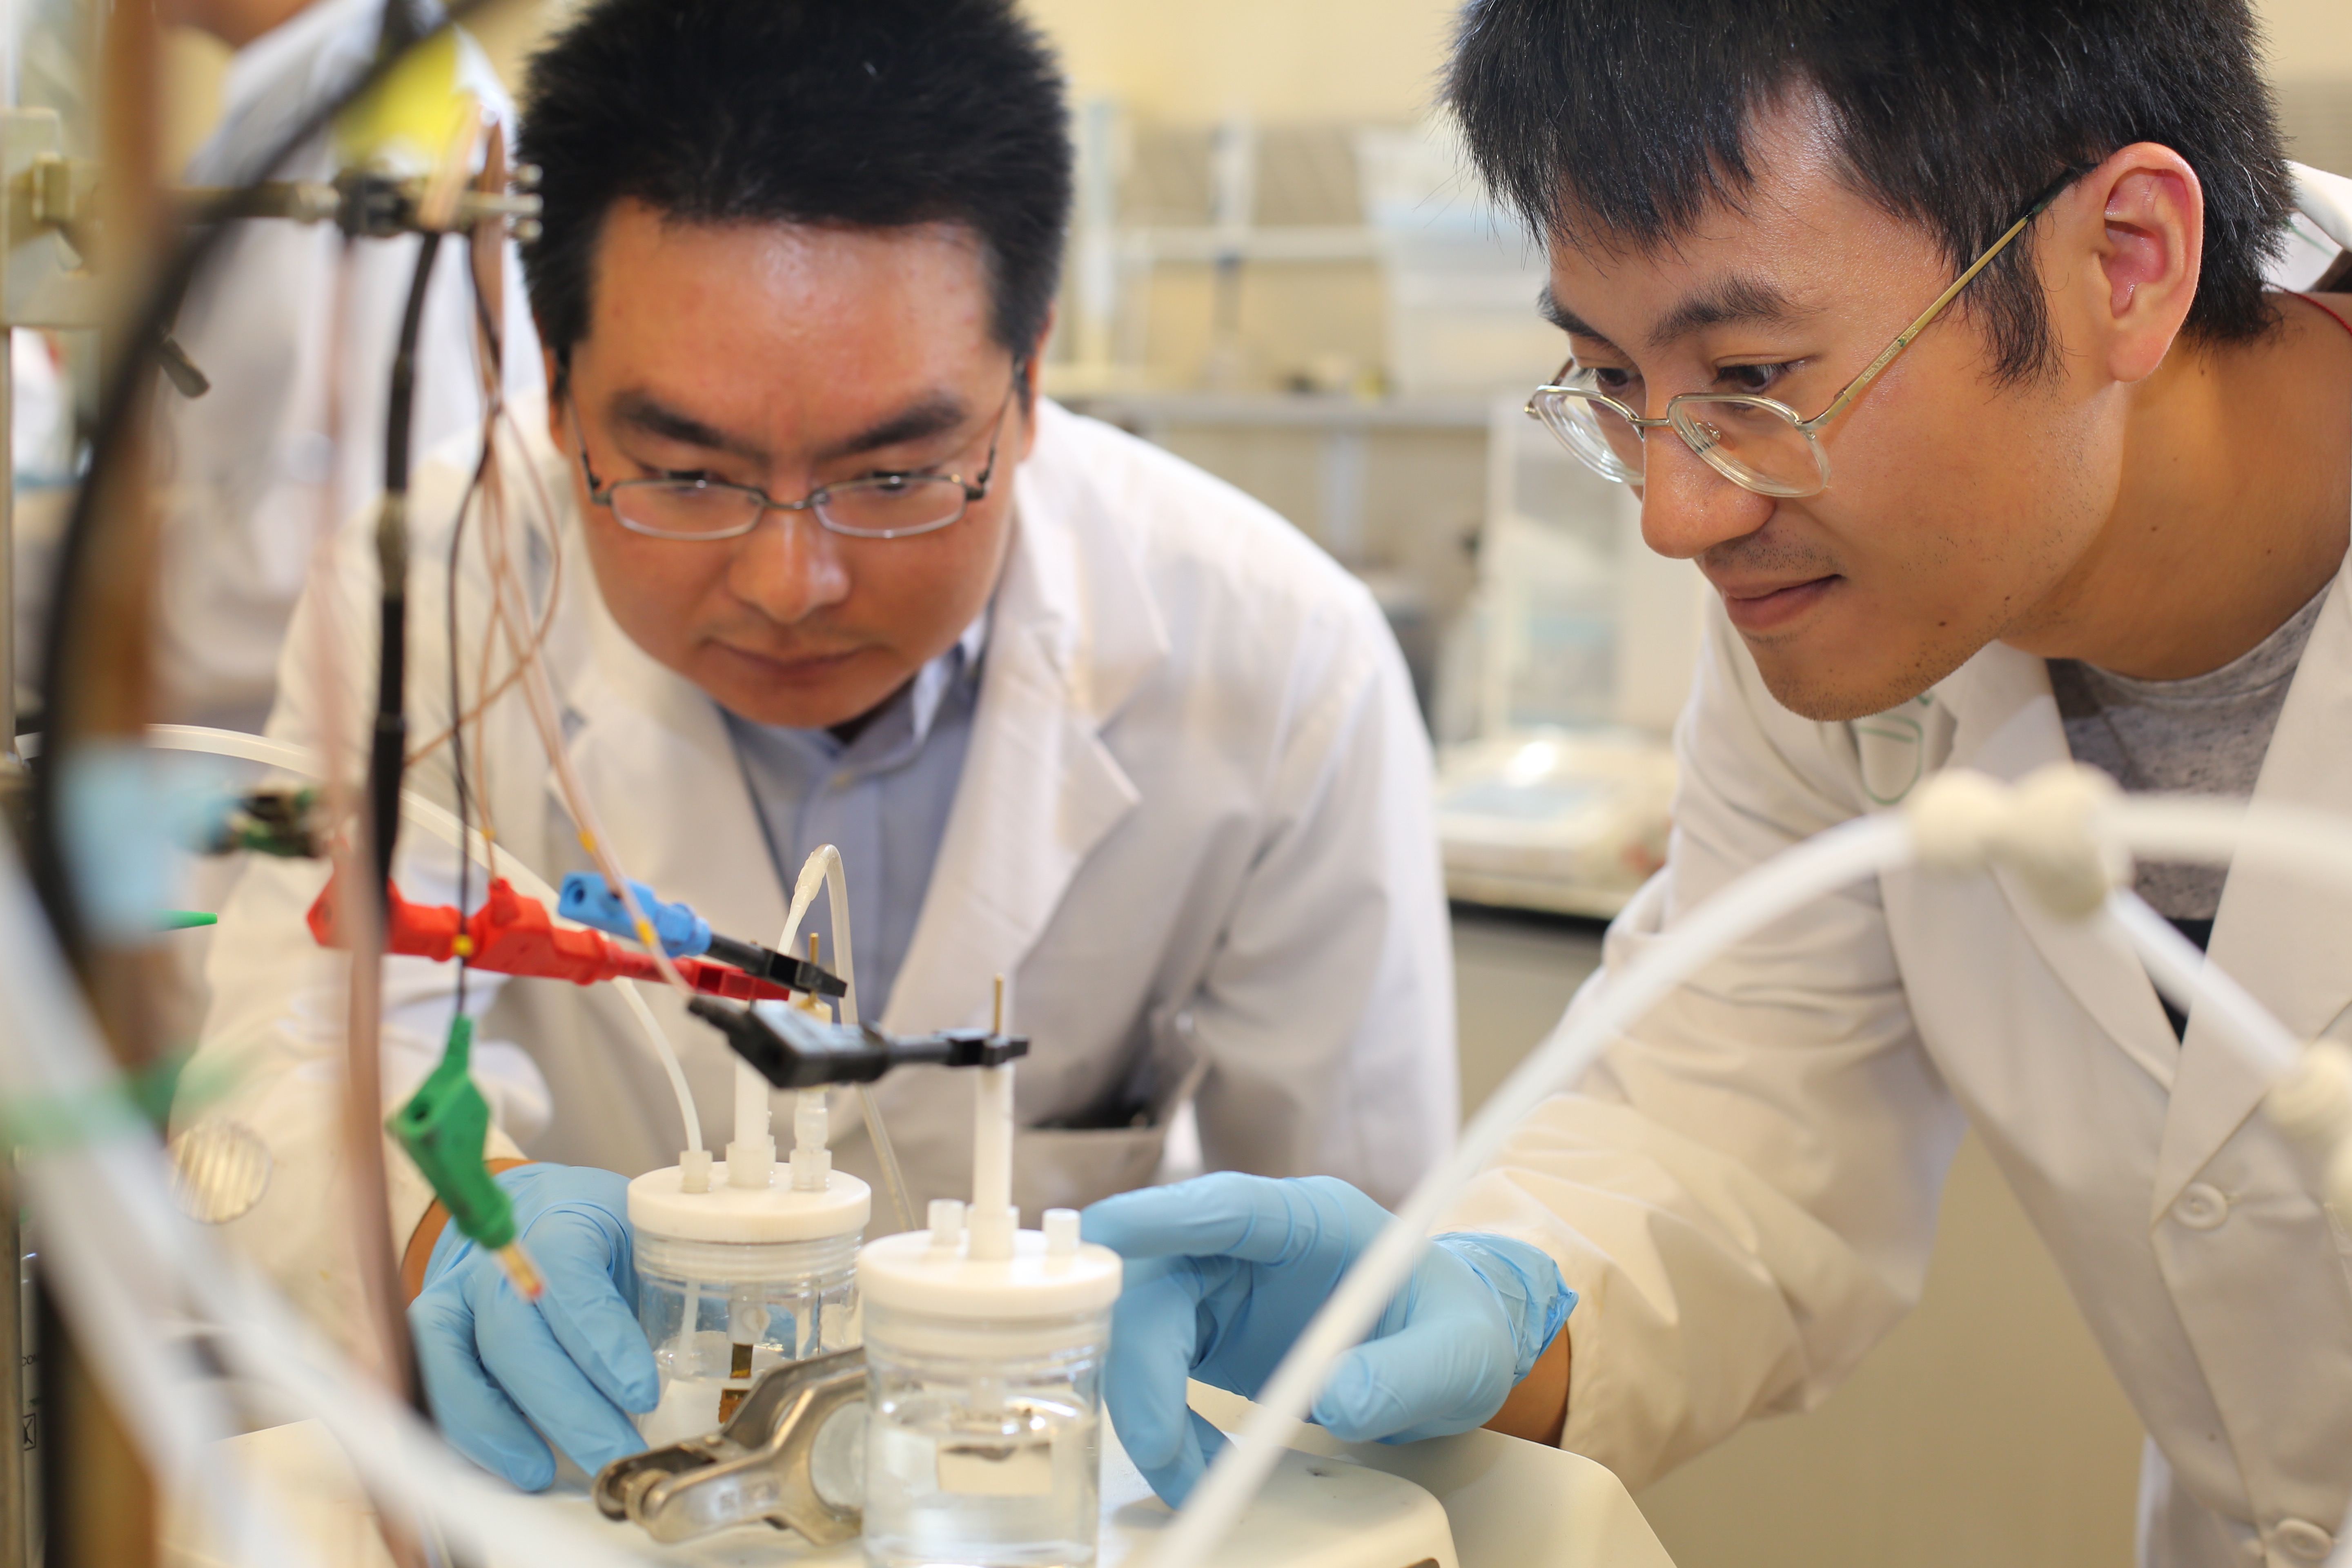 U of T Engineering researchers Min Liu (left), Yuanjie Pang